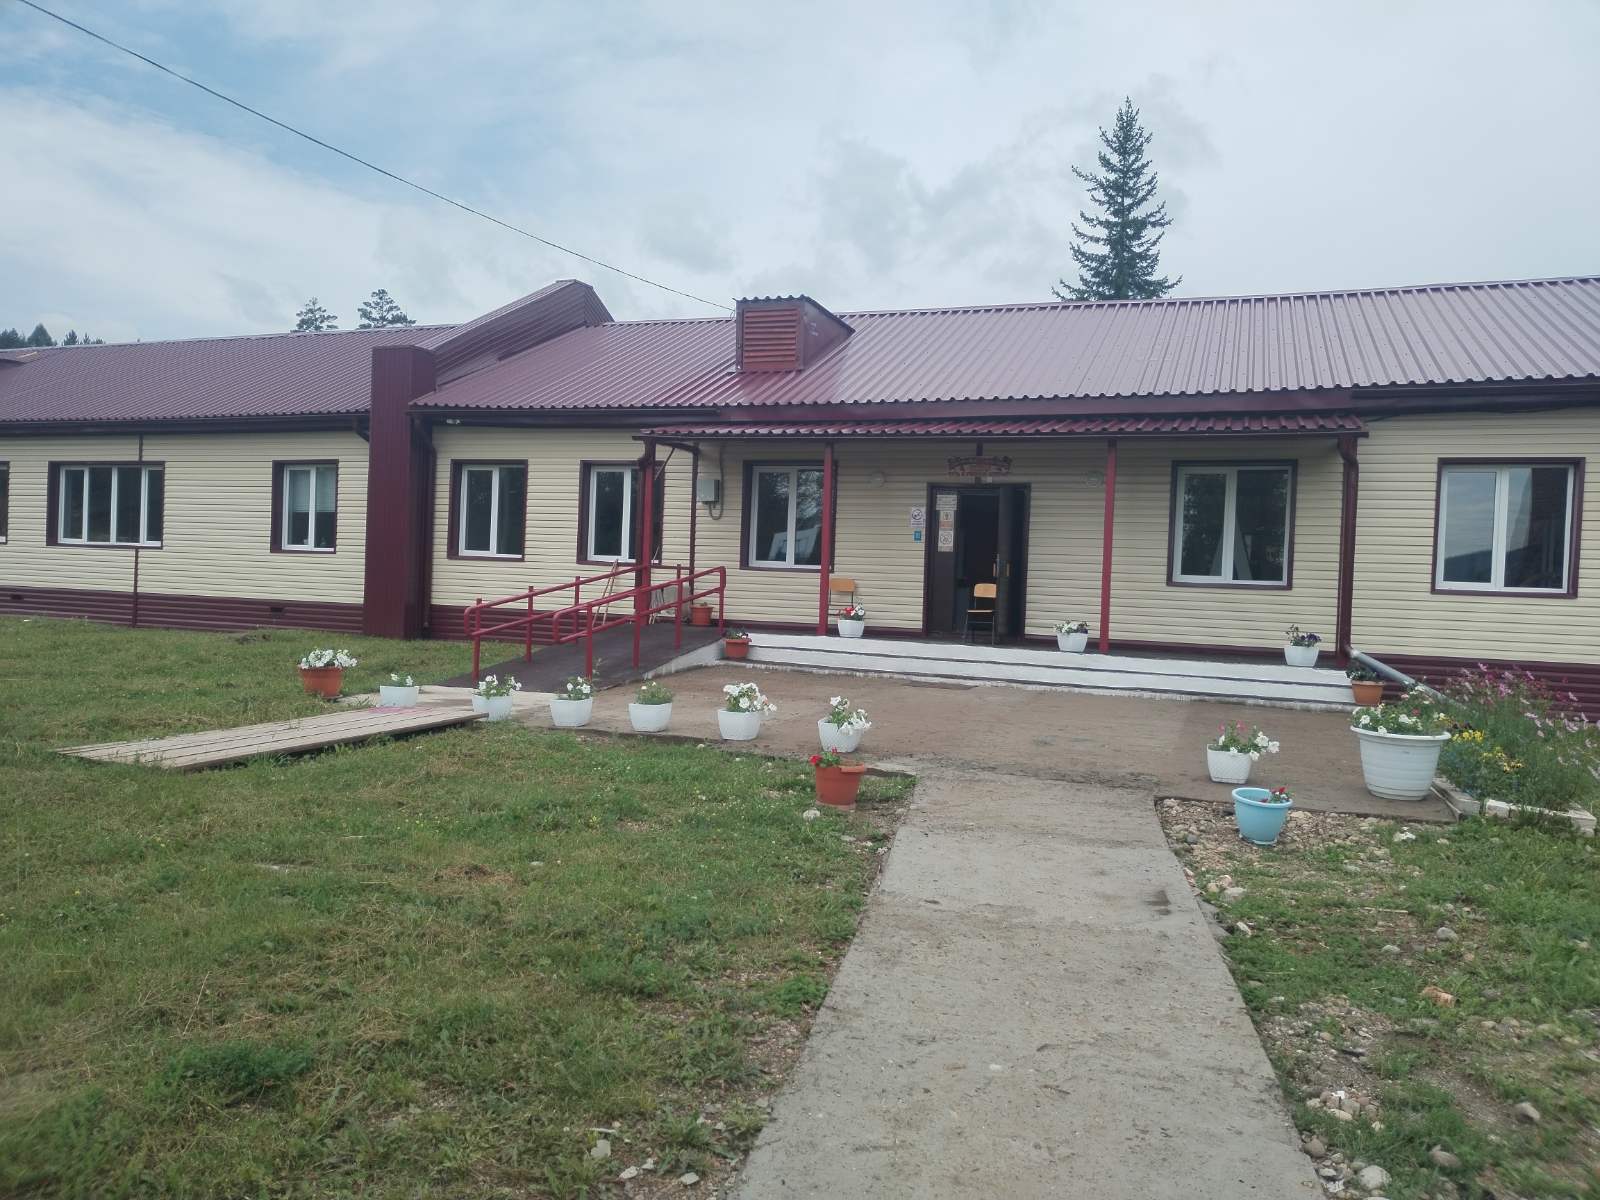 Фотография школы после капитального ремонта 2019-2021 г..